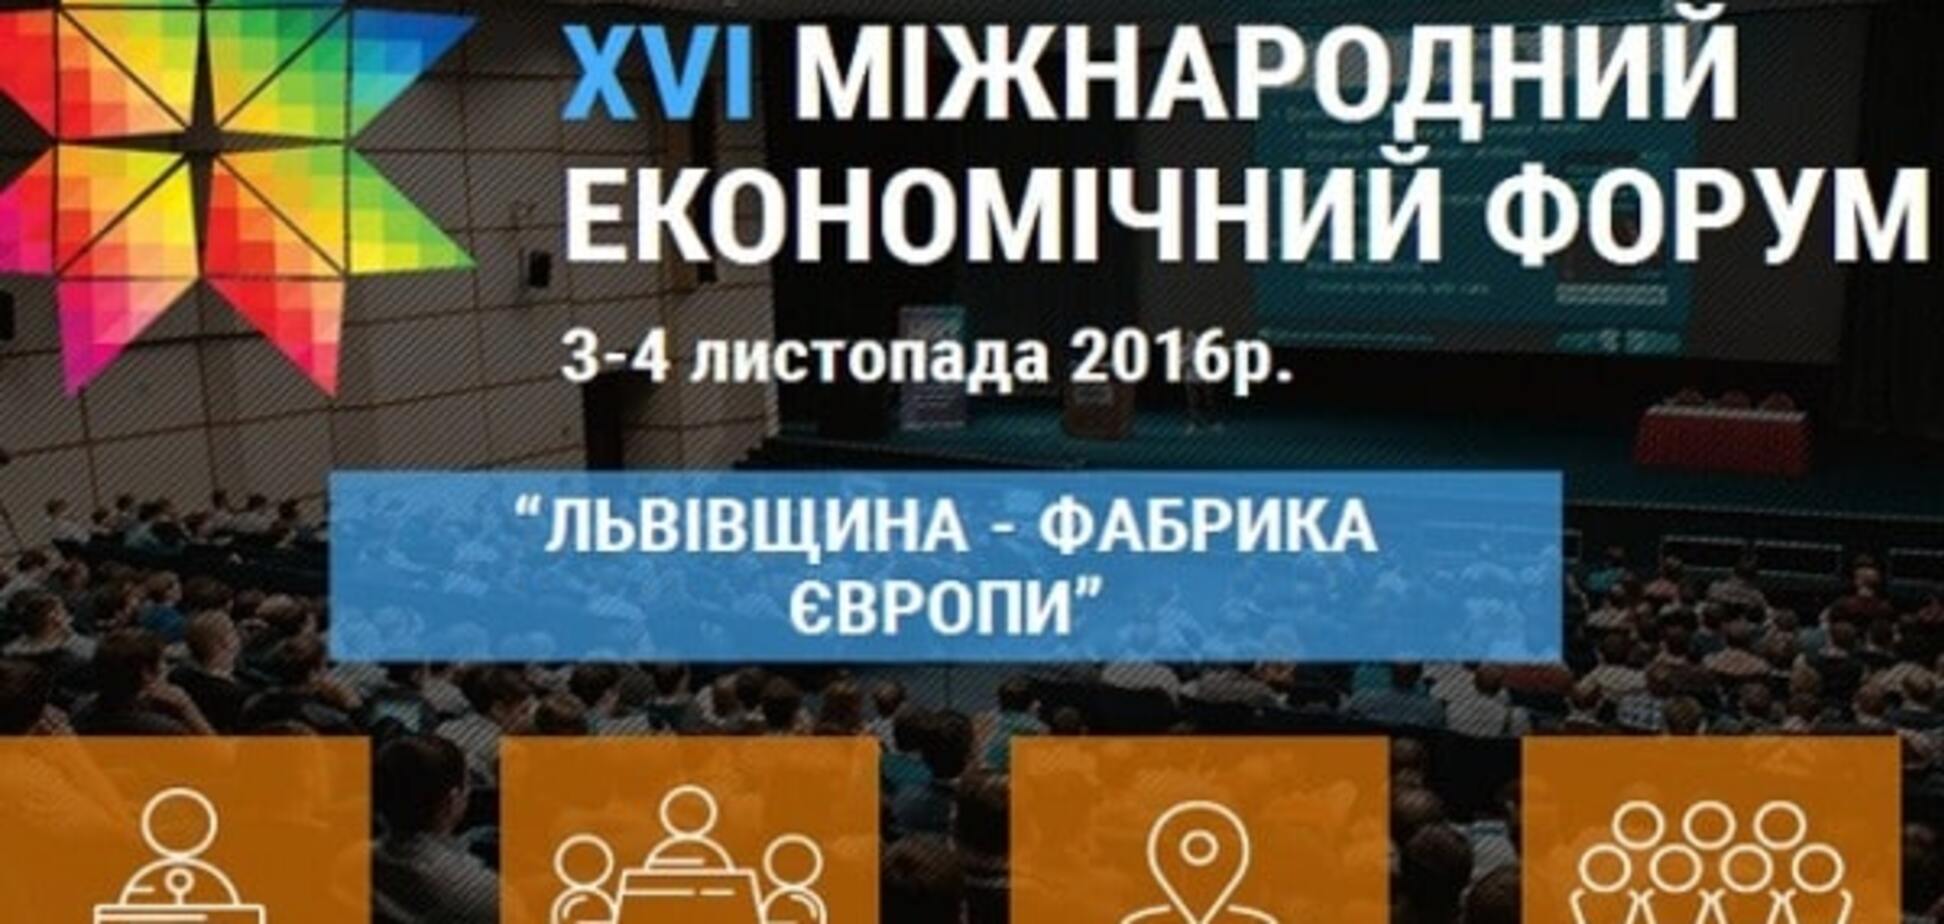 XVI Международный экономический форум во Львове: чего ожидать